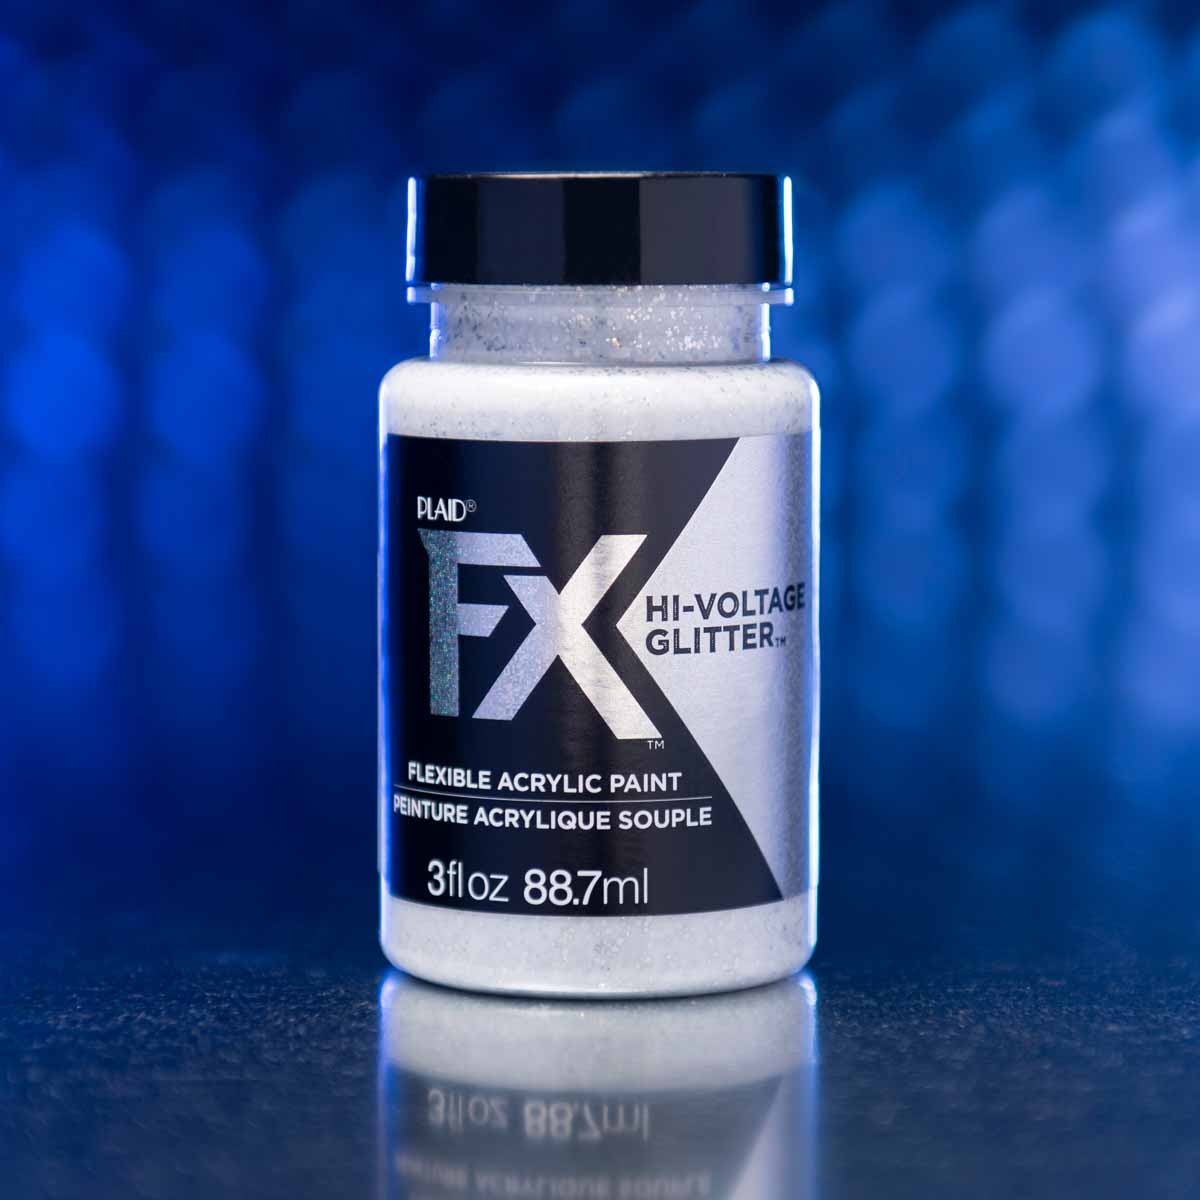 PlaidFX Hi-Voltage Glitter Flexible Acrylic Paint Set, 4 pc. - FXGLTR4PC